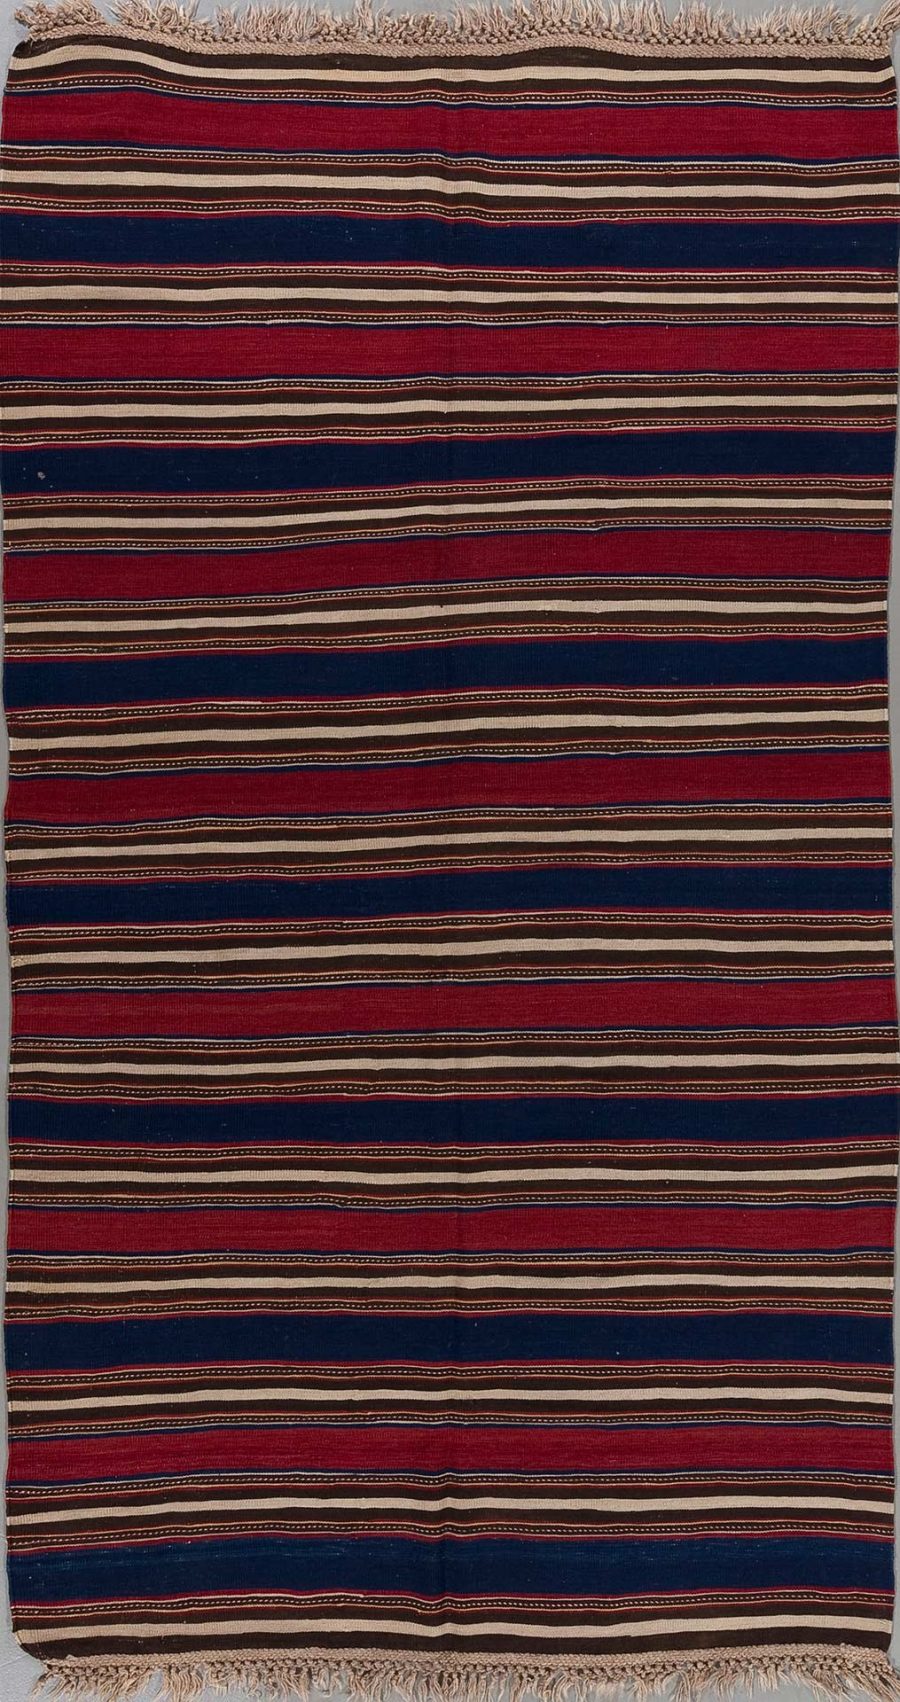 Traditioneller handgewebter Teppich mit horizontalen Streifen in Rot, Schwarz und Beige, mit feinen Mustern und Fransen an den Enden.